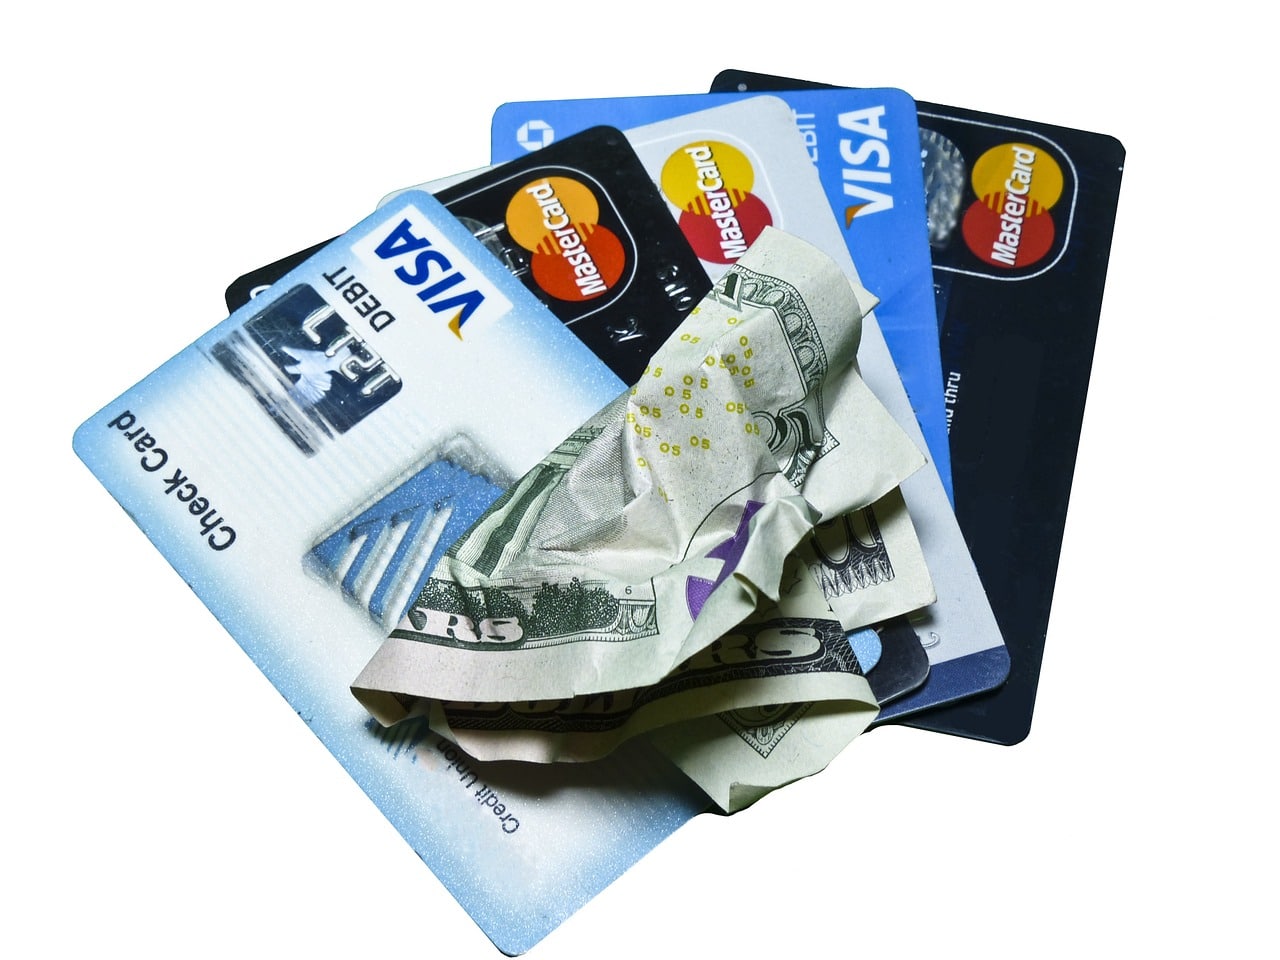 BTC Transaktionswert übertrifft PayPal und holt gegenüber VISA auf - Coincierge